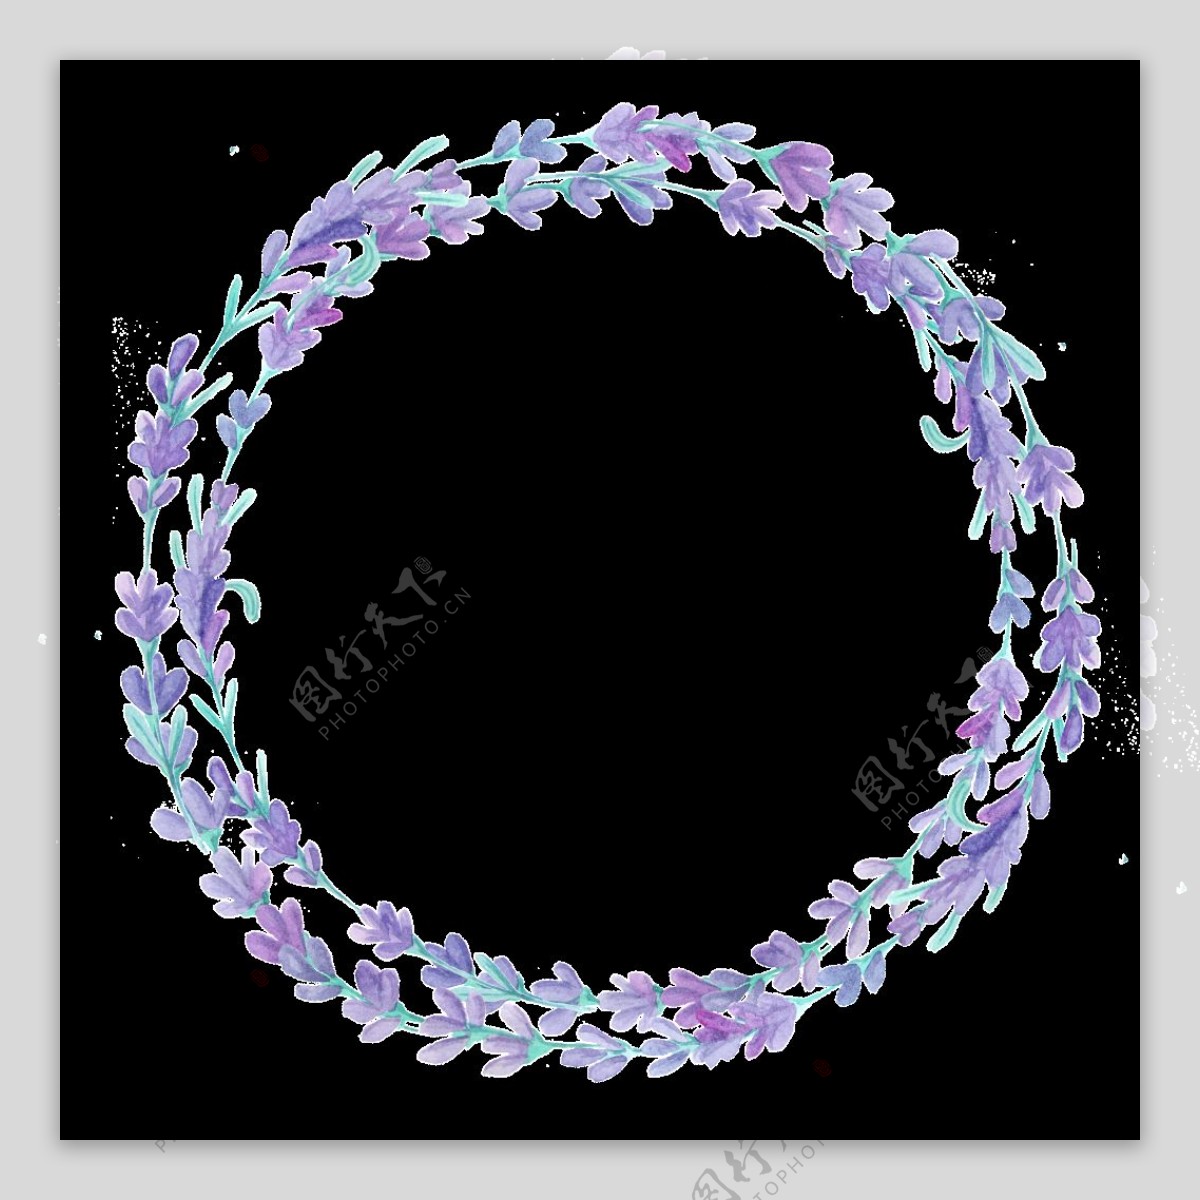 鬓紫花圈透明装饰素材